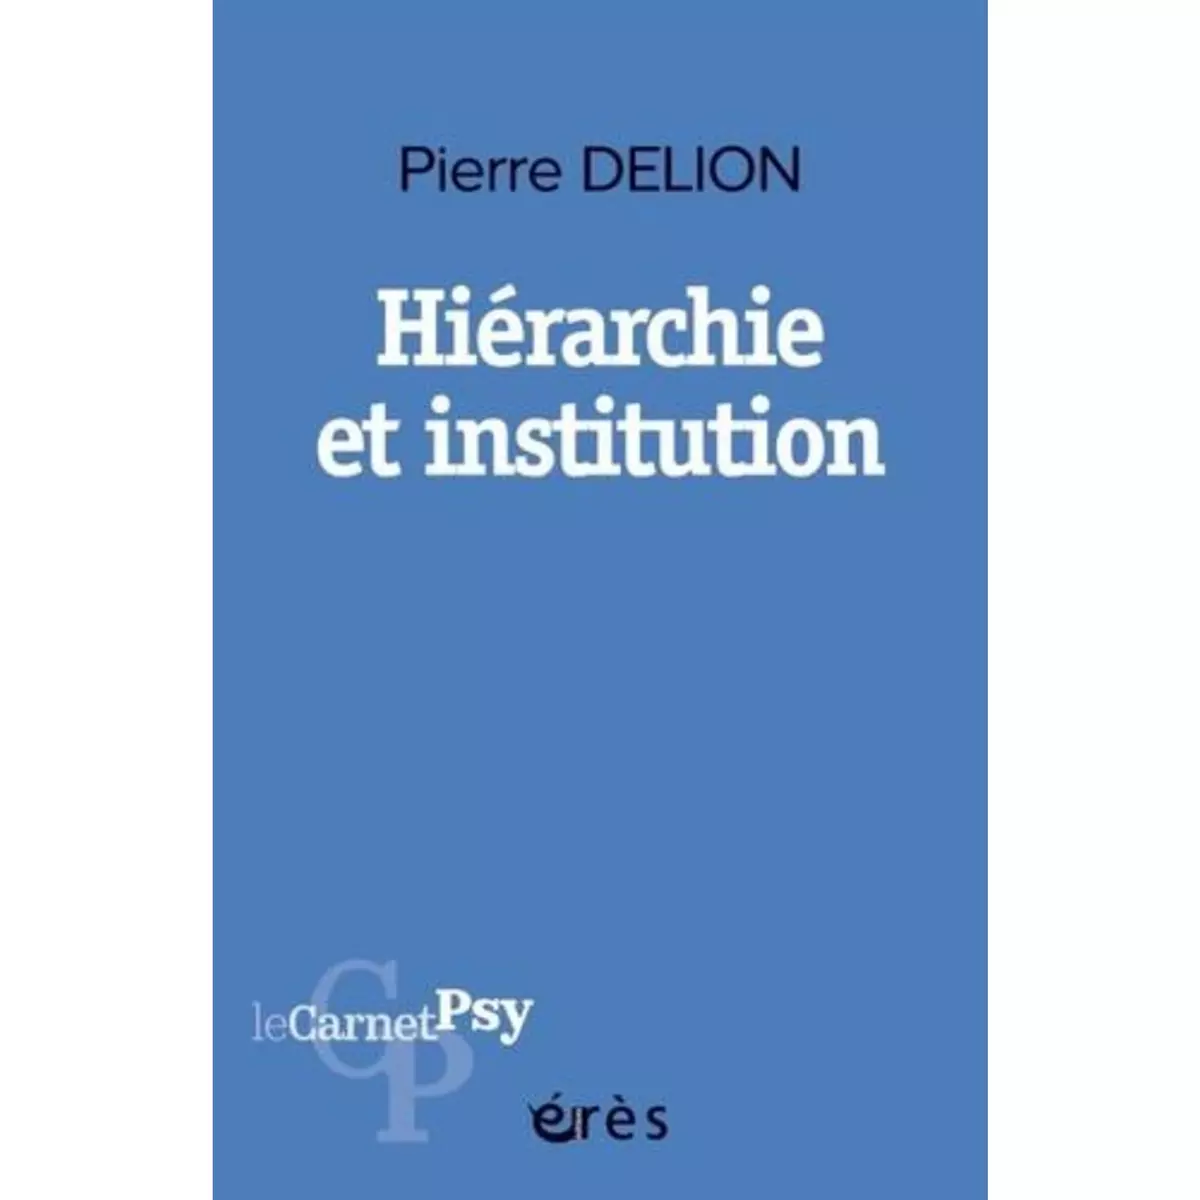  HIERARCHIE ET INSTITUTION, Delion Pierre